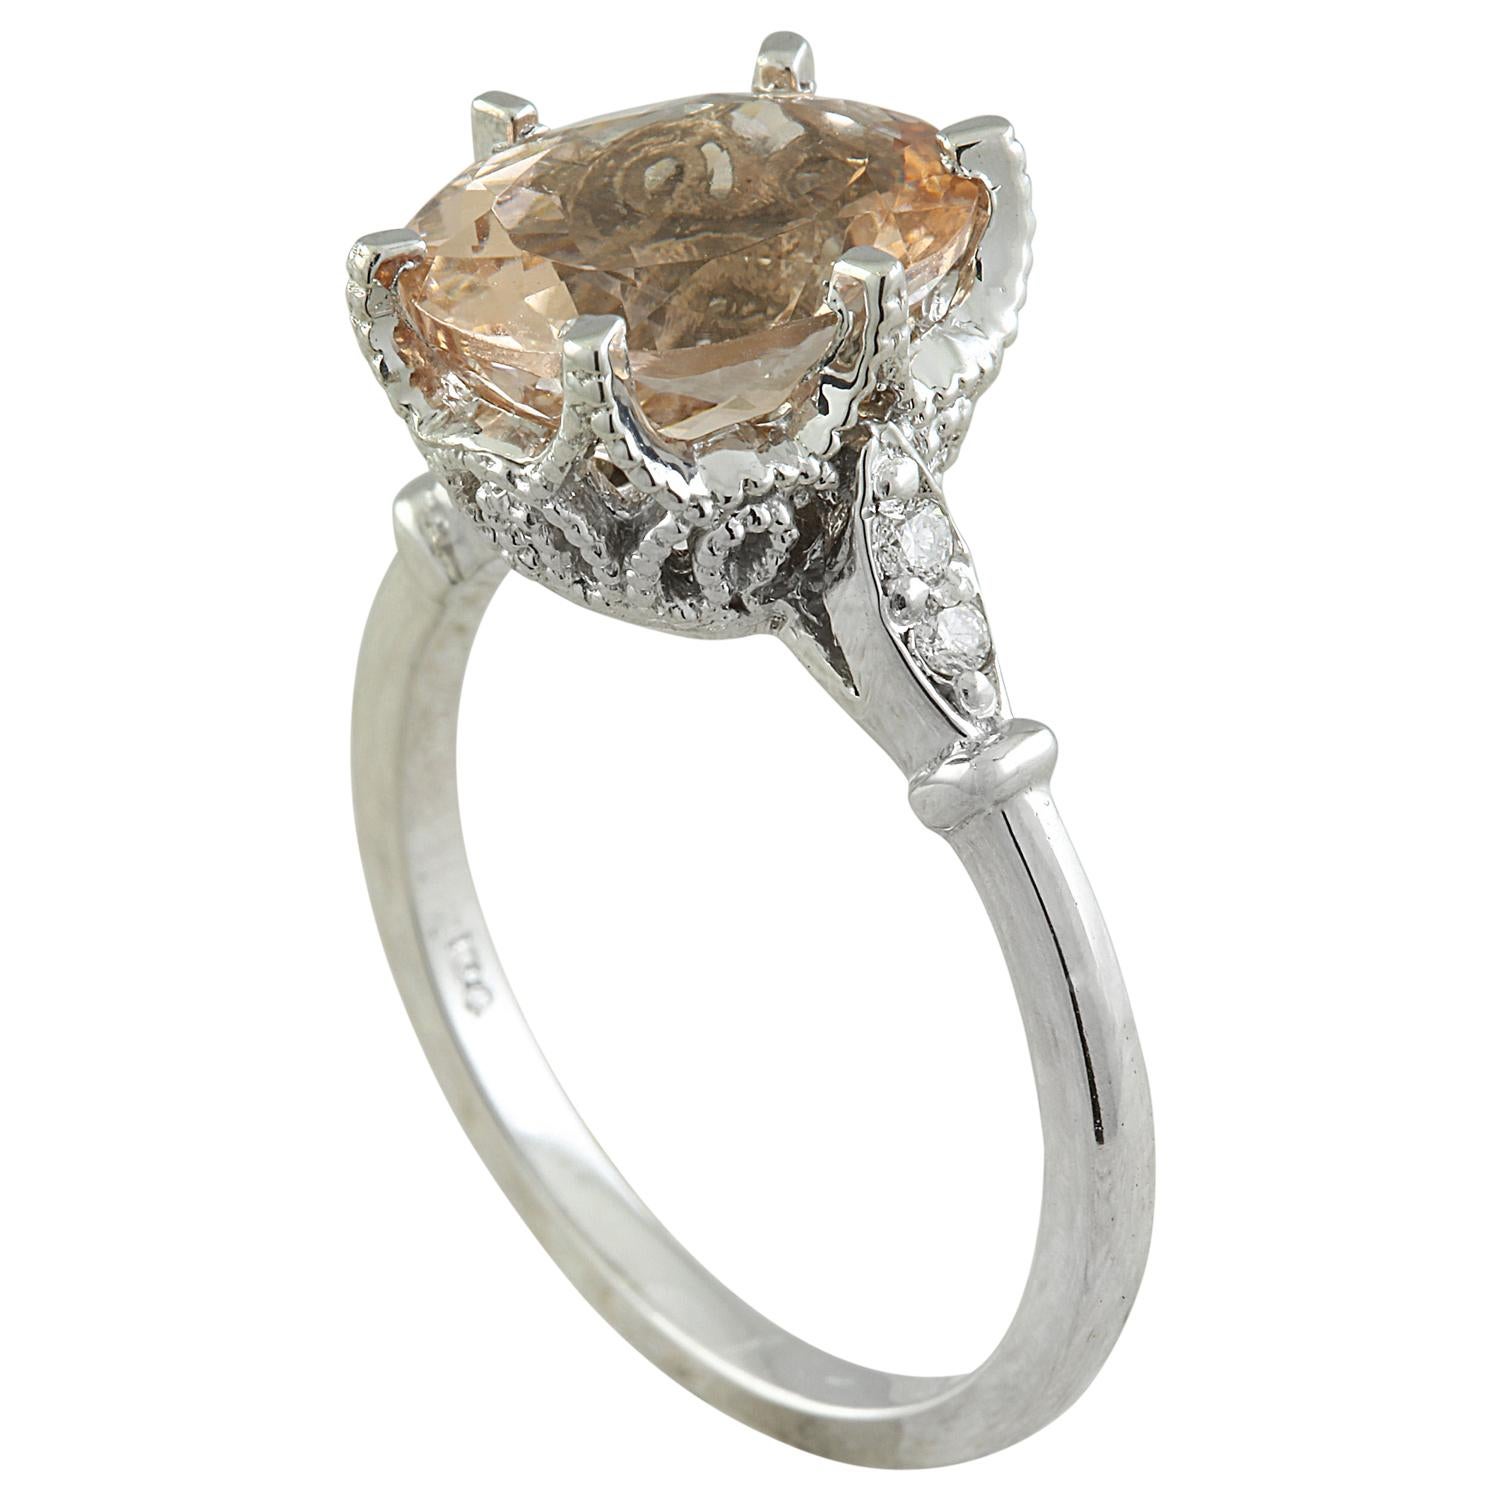 3.41 Carat Natural Morganite 14 Karat Solid White Gold Diamond Ring
Estampillé : 14K 
Poids total de l'anneau : 4,2 grammes 
Poids de la Morganite : 3.26 Carat (11.00x9.00 Millimètres)  
Poids du diamant : 0,15 carat (couleur F-G, pureté